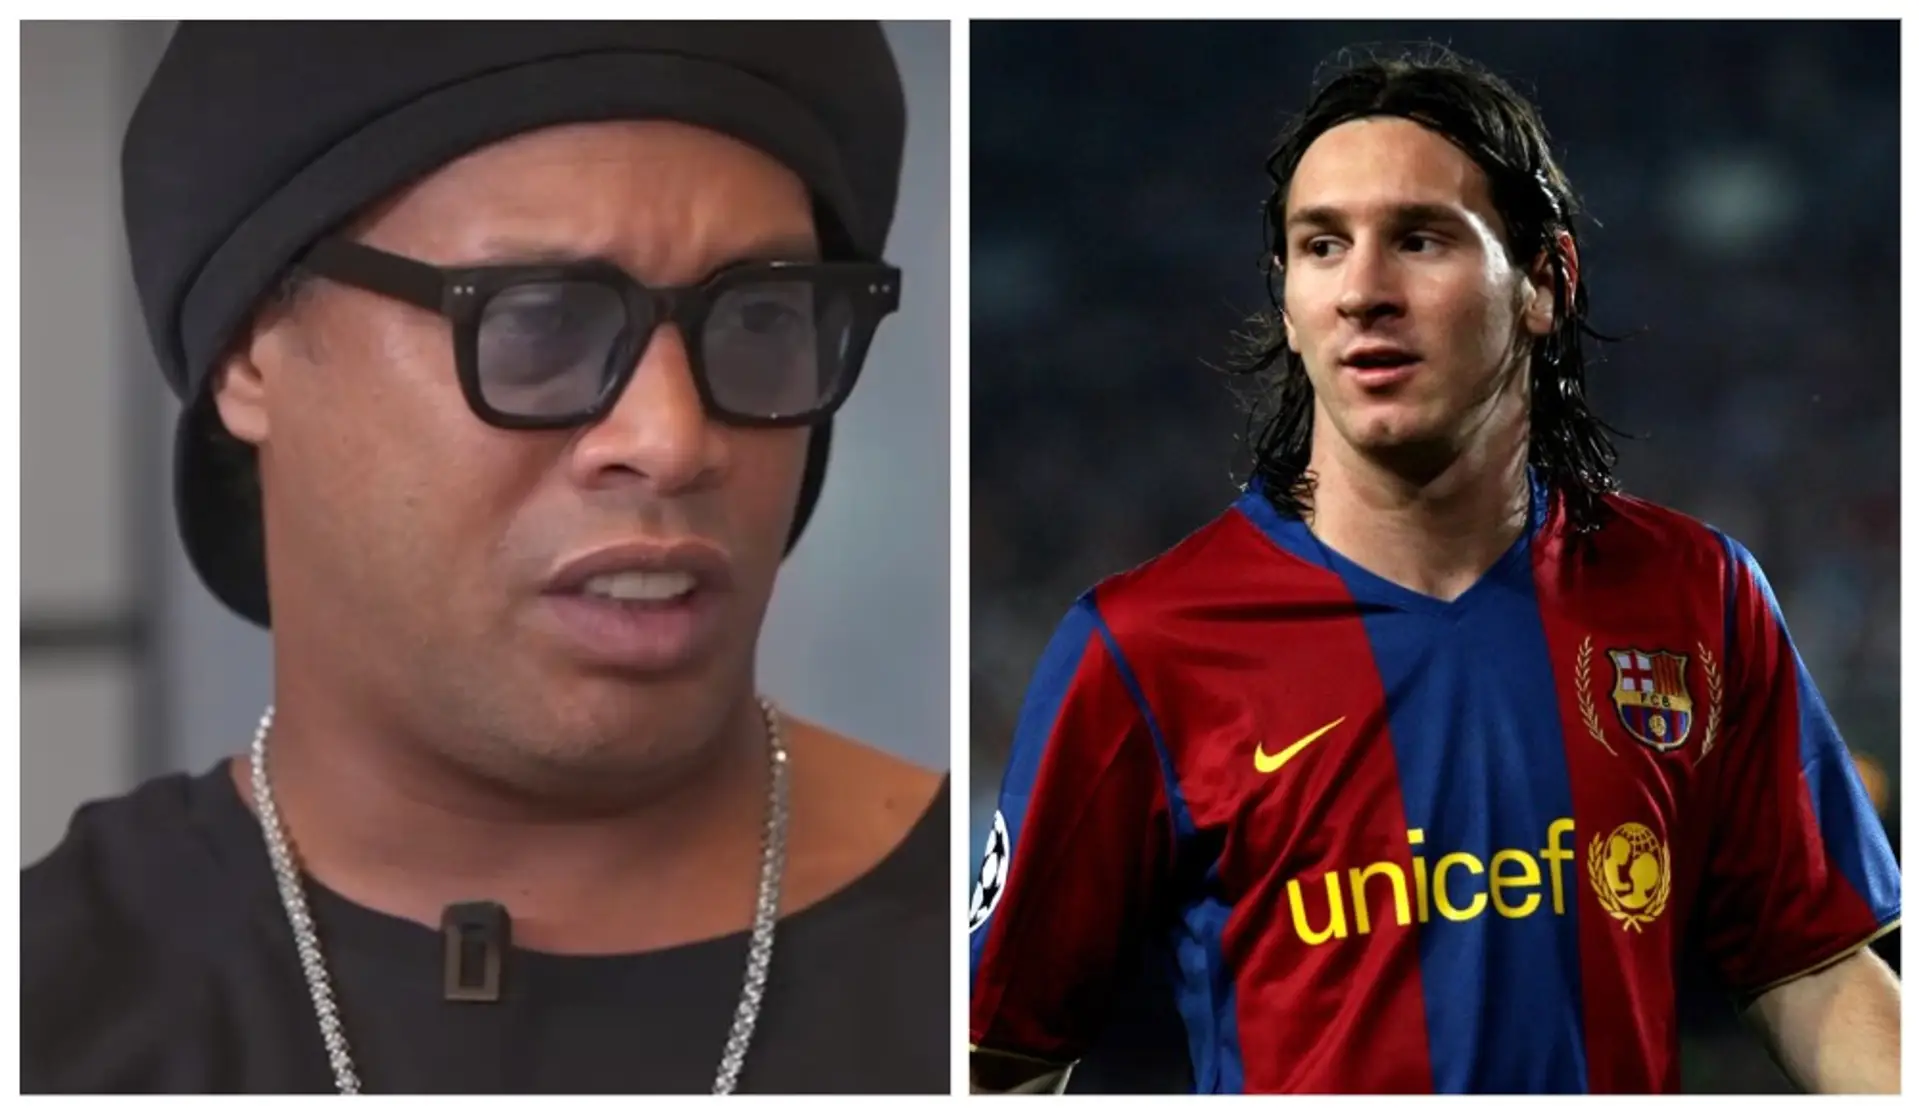 "Für mich war das keine Überraschung": Ronaldinho wurde gebeten, sich an seine erste Reaktion auf Messi bei Barcelona zu erinnern